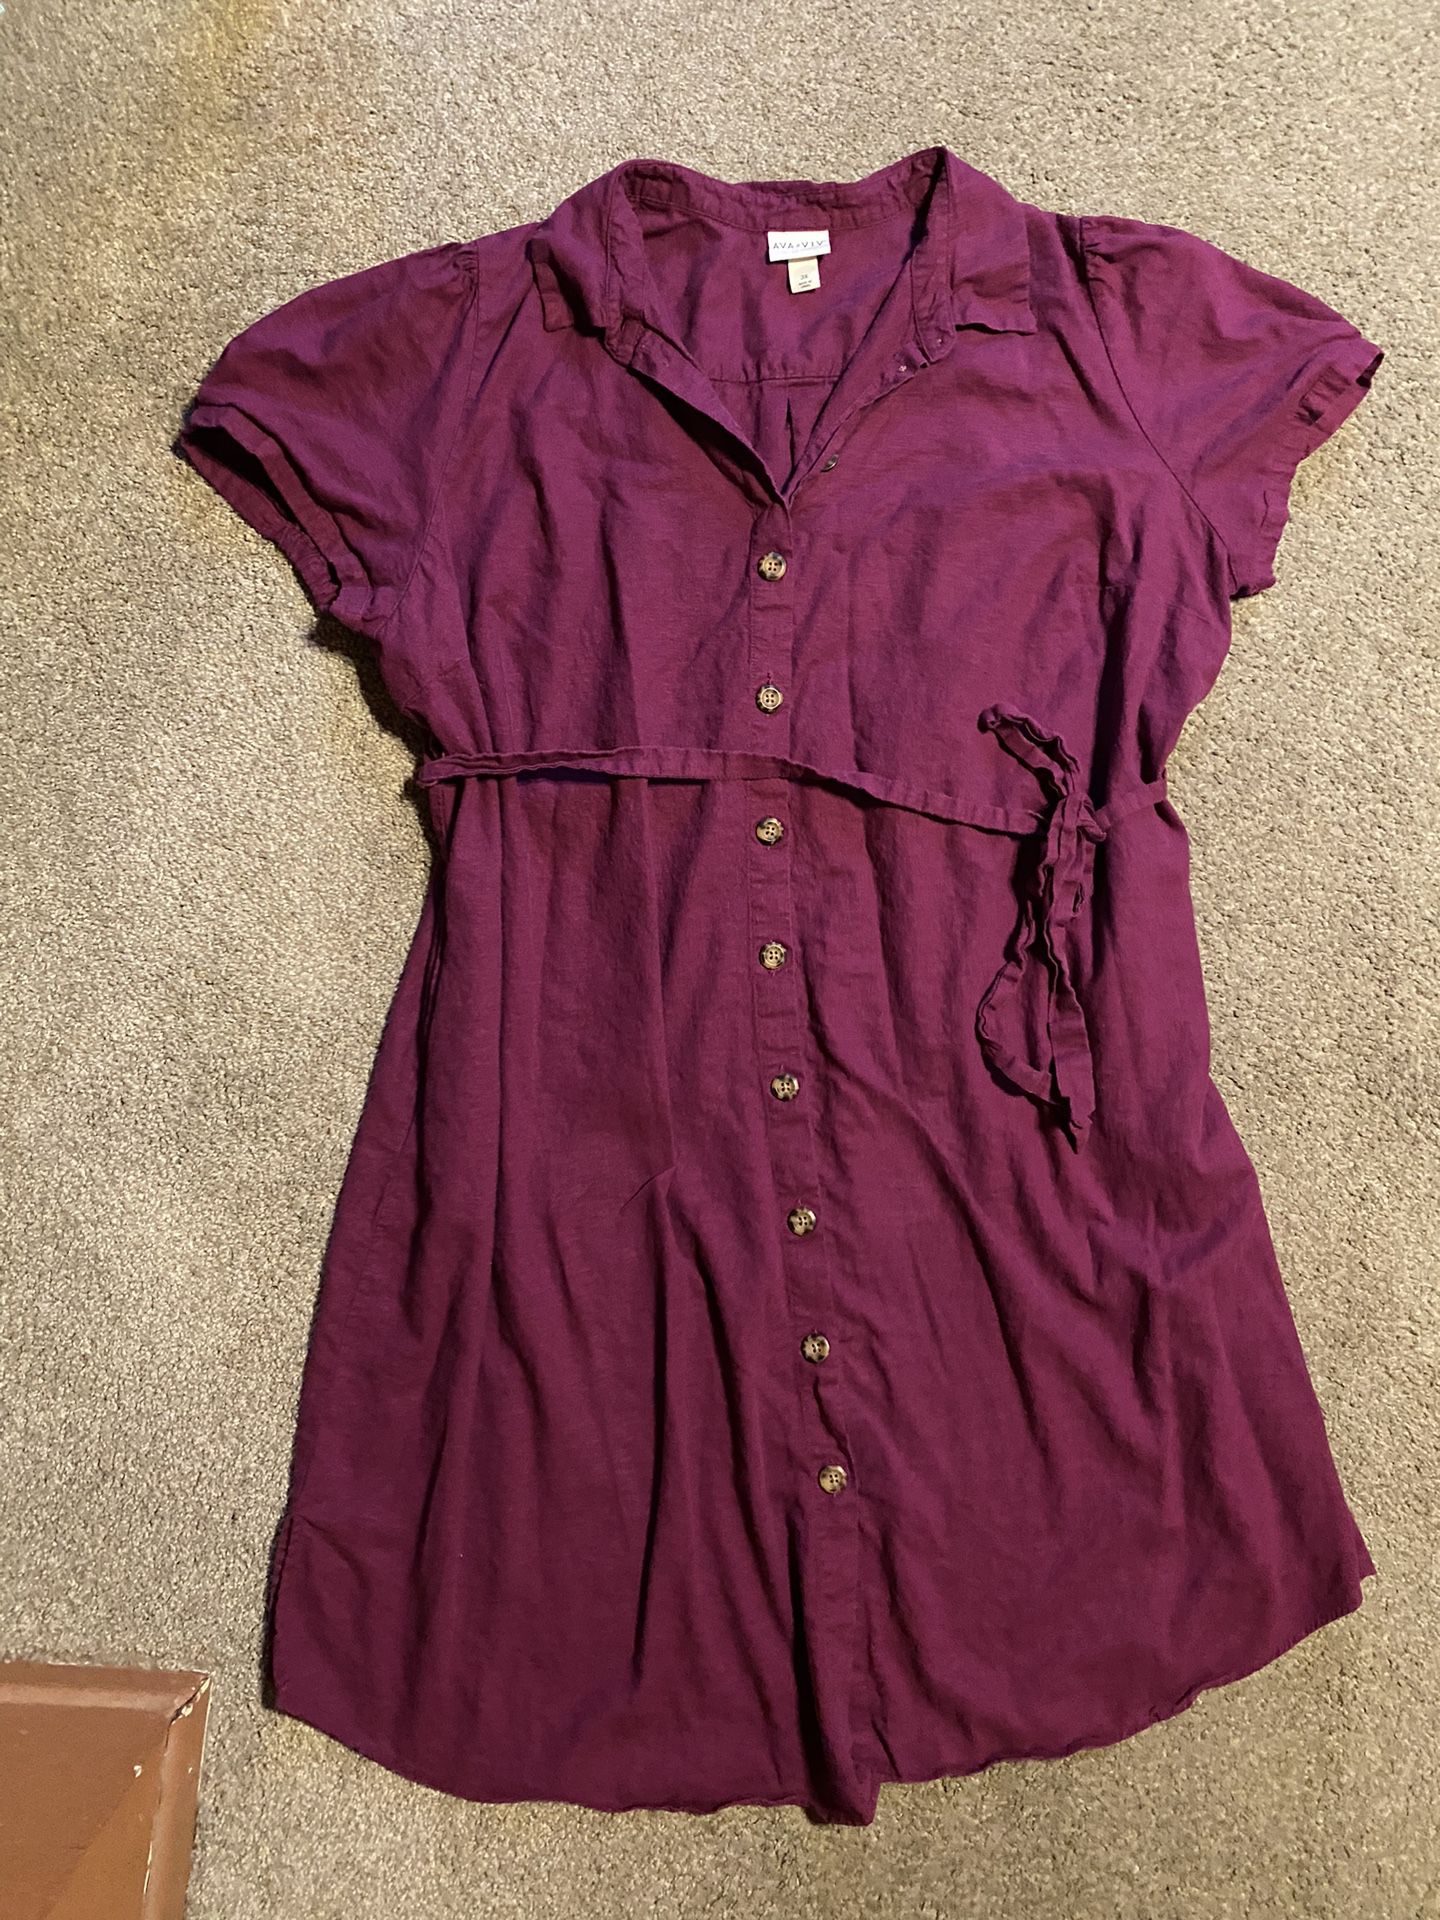 Target Ava & Viv Purple Short Dress Plus Size 3X